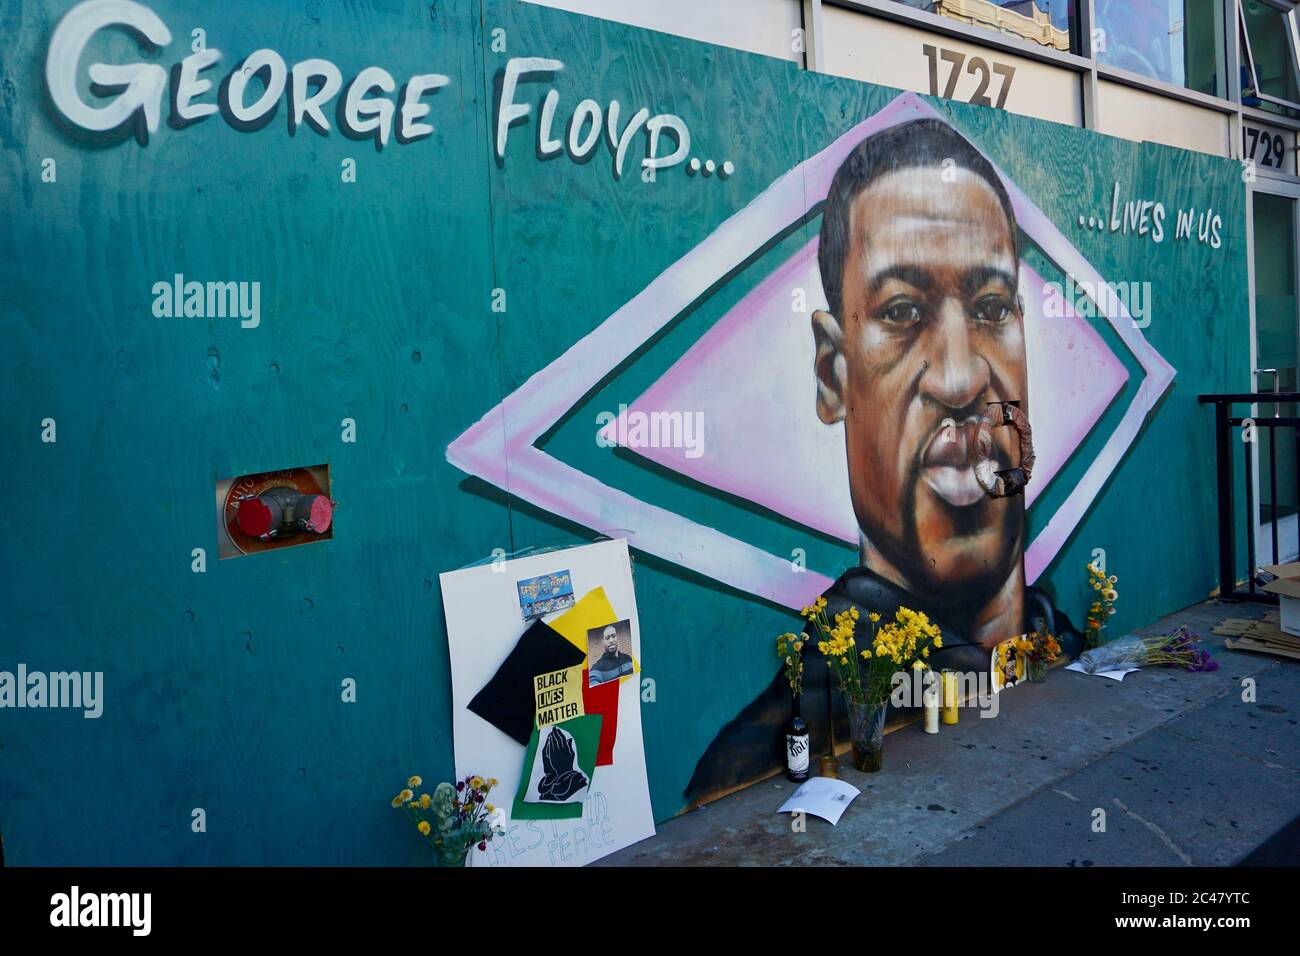 La vie noire est un monument commémoratif et un sanctuaire pour George Floyd. Fresque de l'artiste AmendTDK peinte sur la façade de la boutique à bord. Centre ville d'Oakland, Californie, États-Unis. Banque D'Images